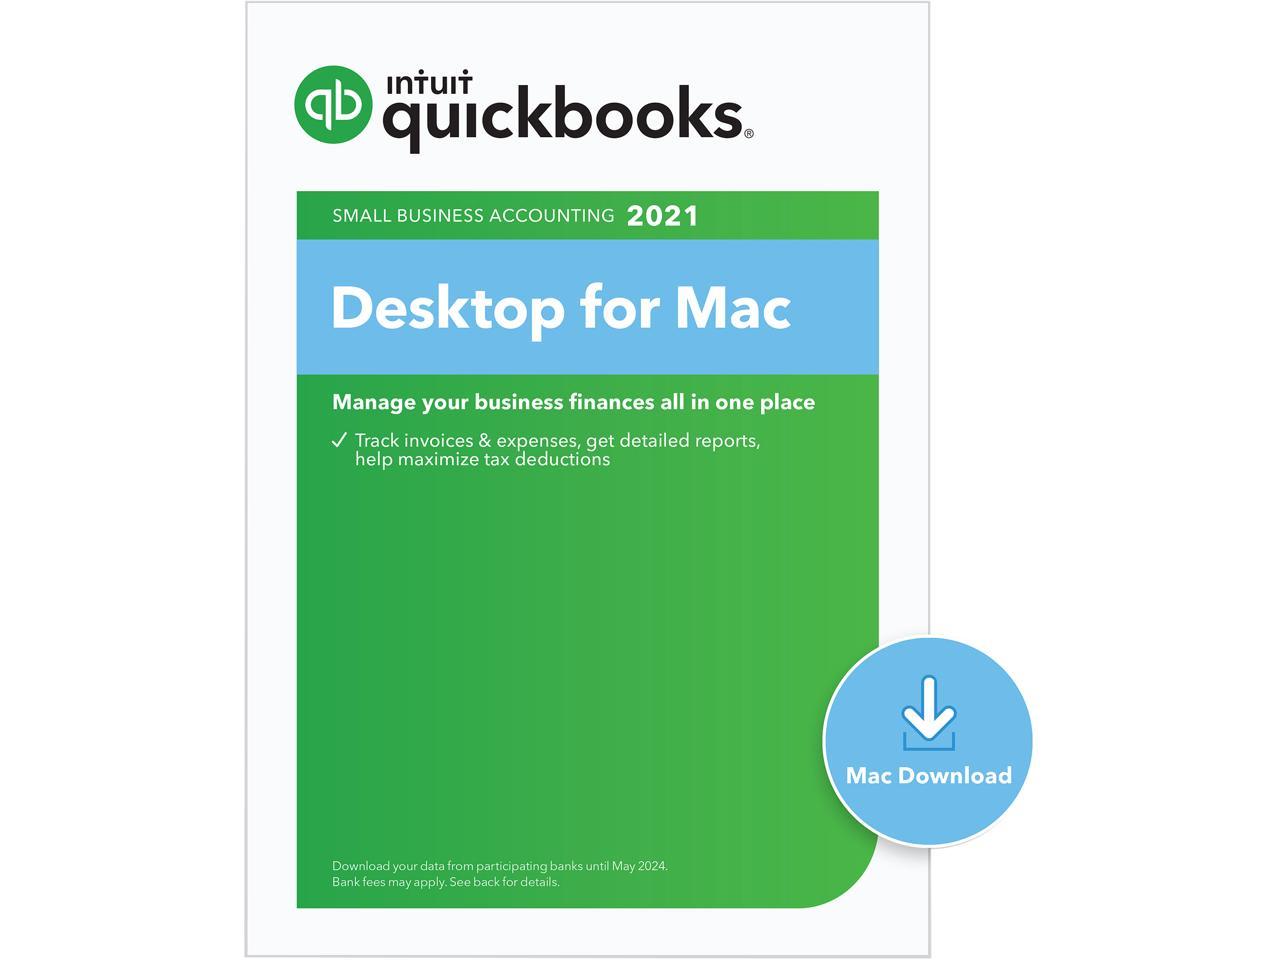 quickbooks for mac 2005